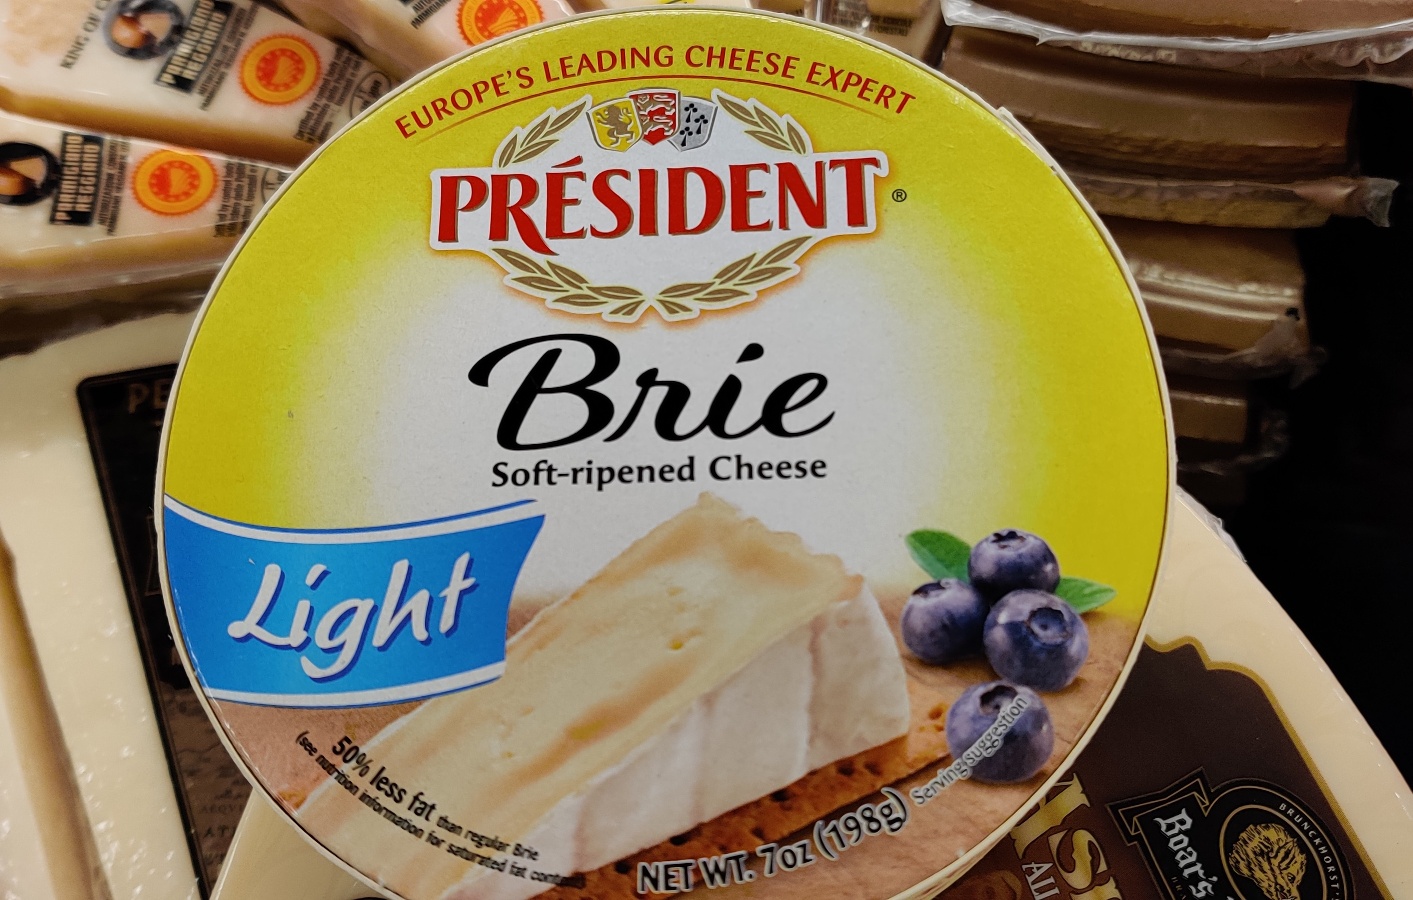 President Light Brie